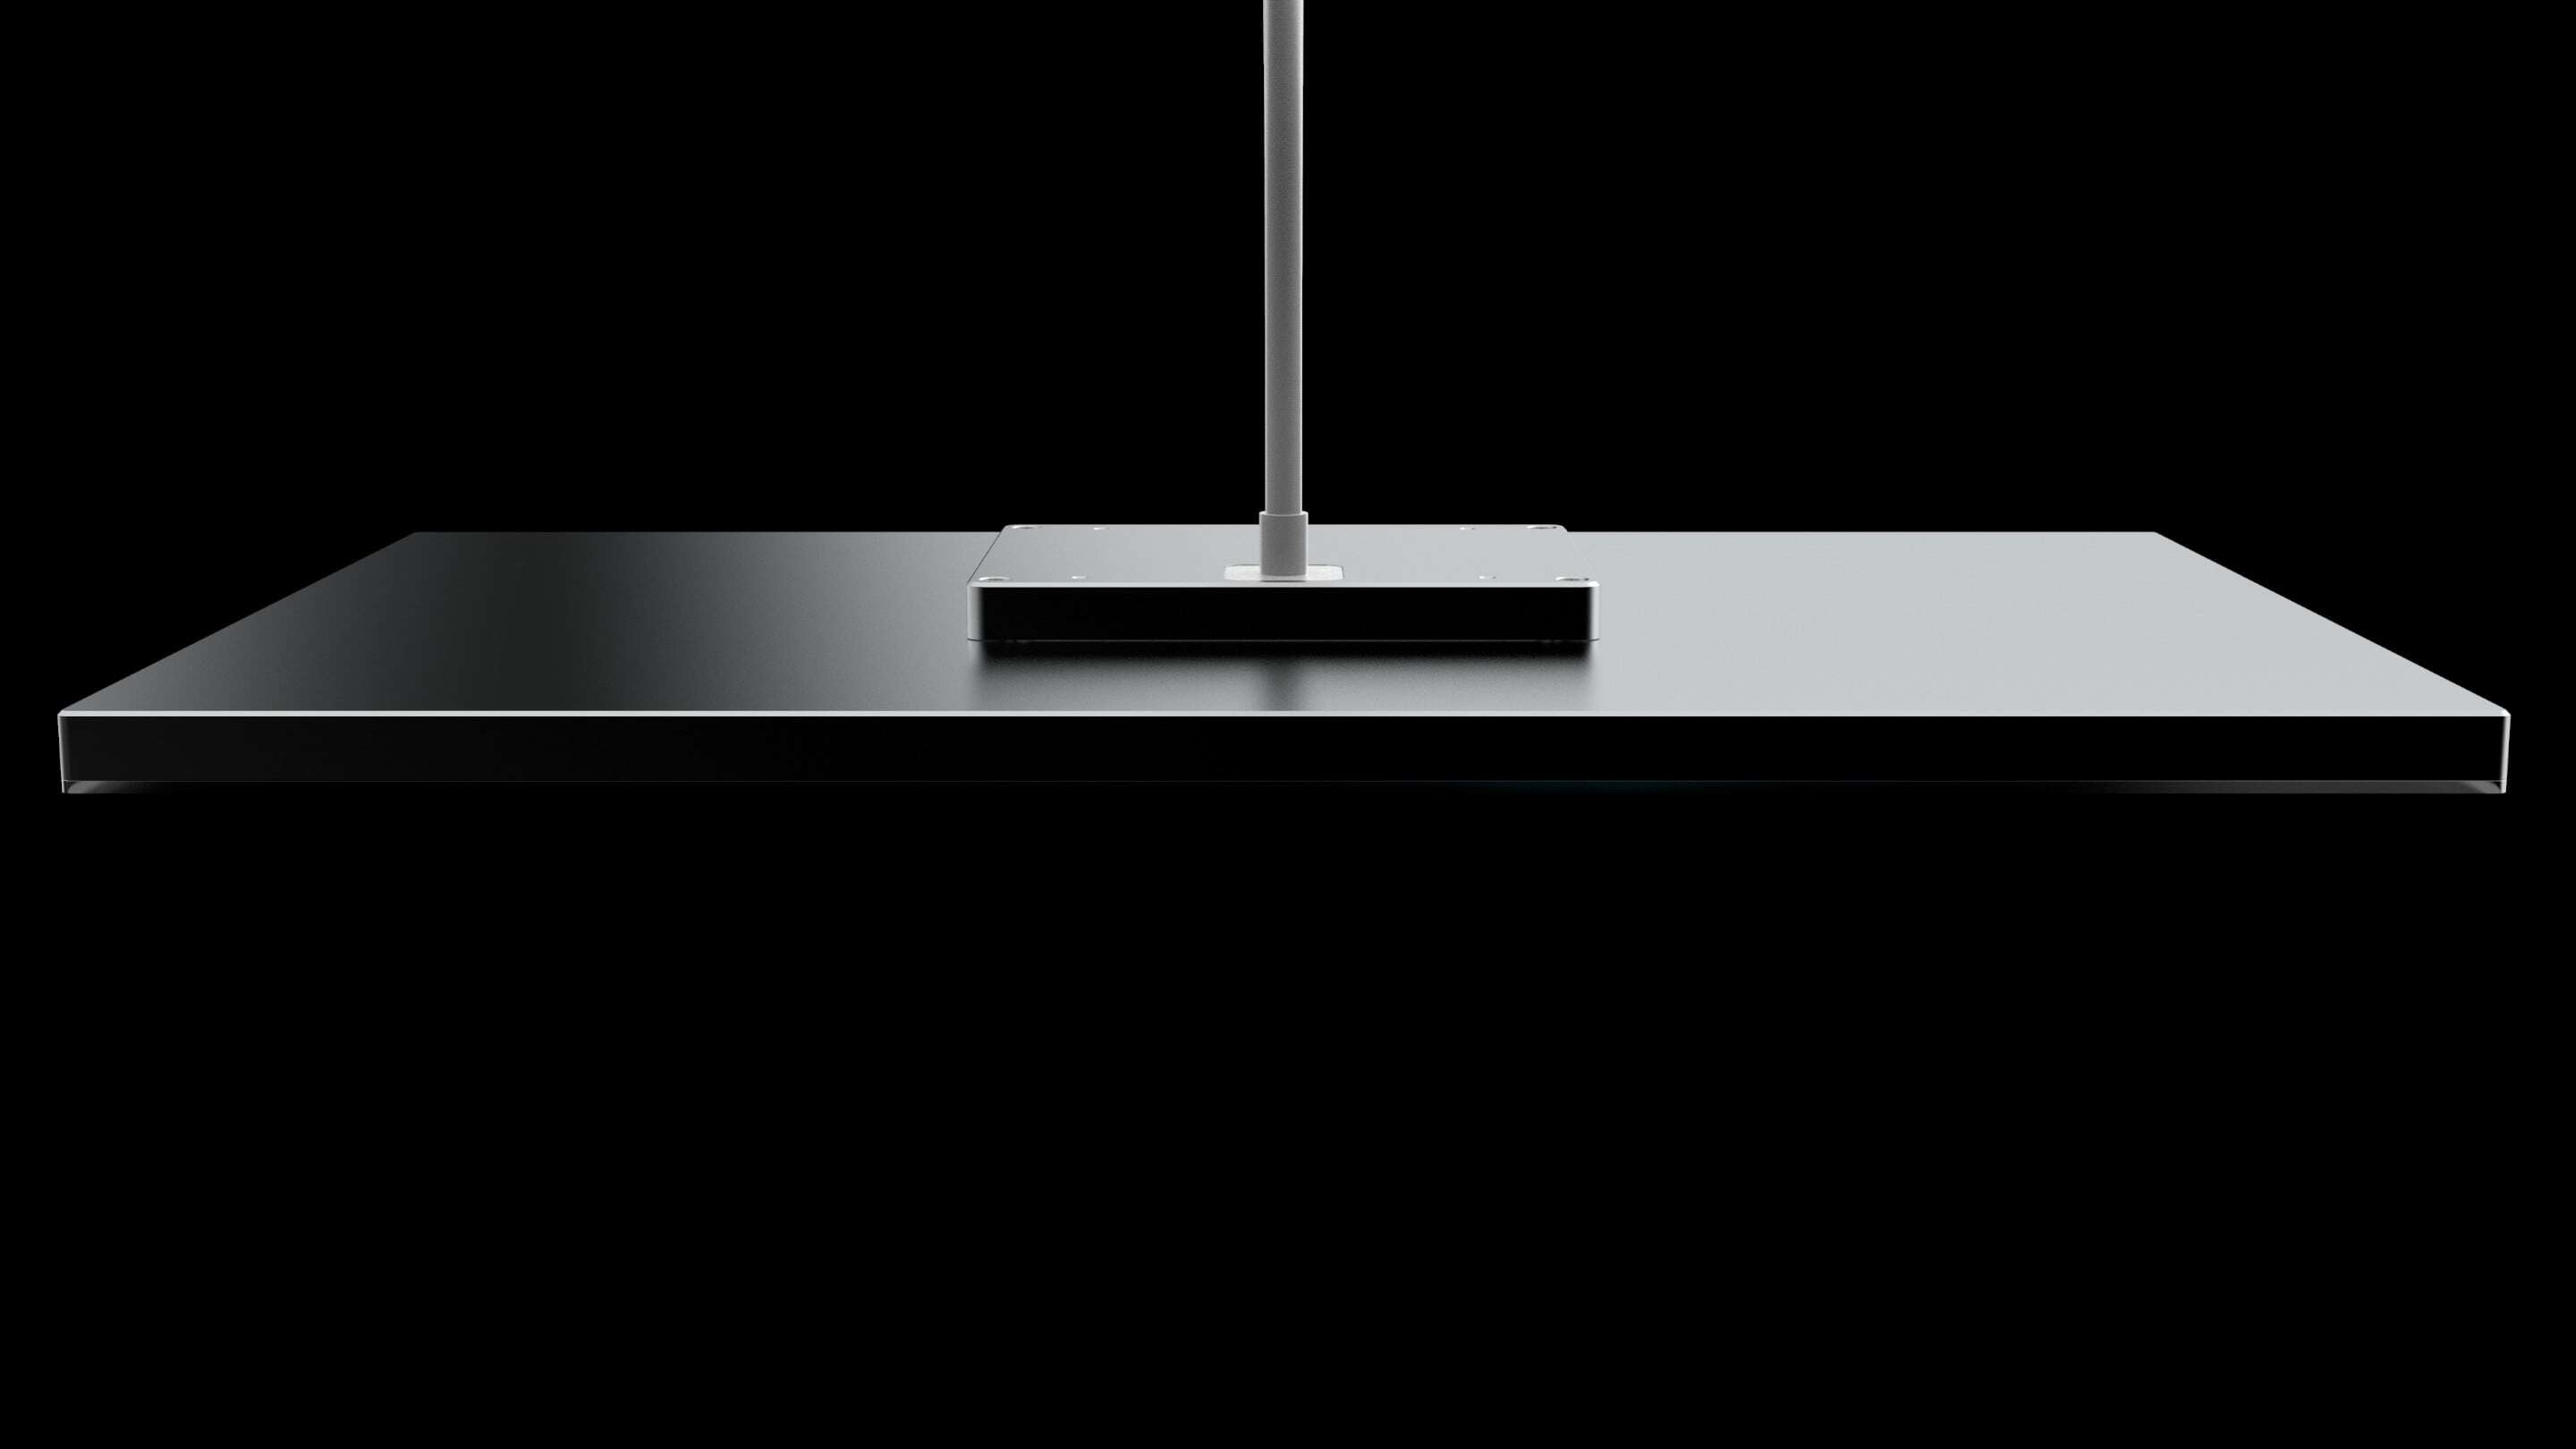 Design - Designa en kabel, ett svart rektangulärt bord med en stolpe